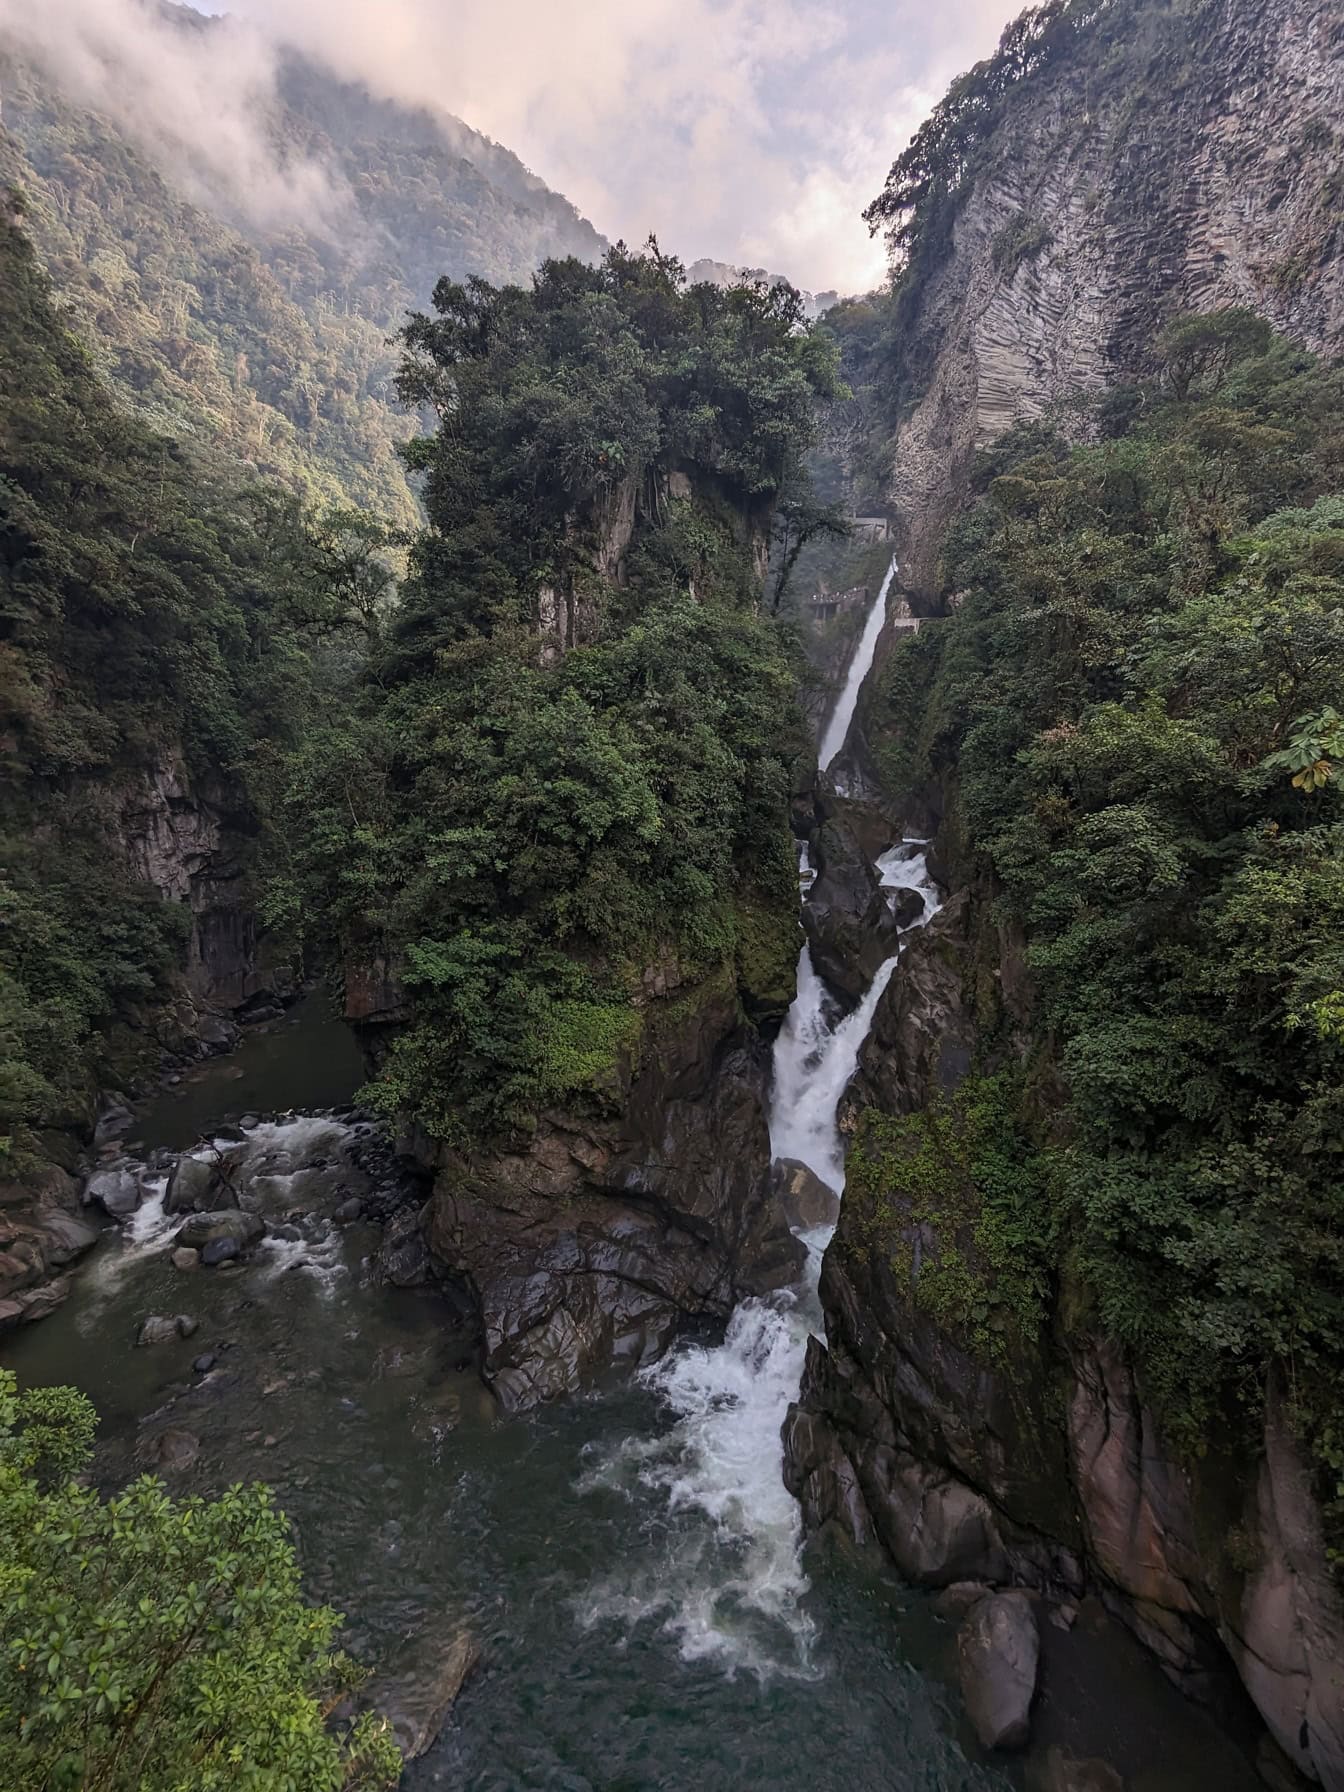 Cascada diavolului, o minune naturală în pădurea tropicală din munții Anzi în parcul natural din Ecuador